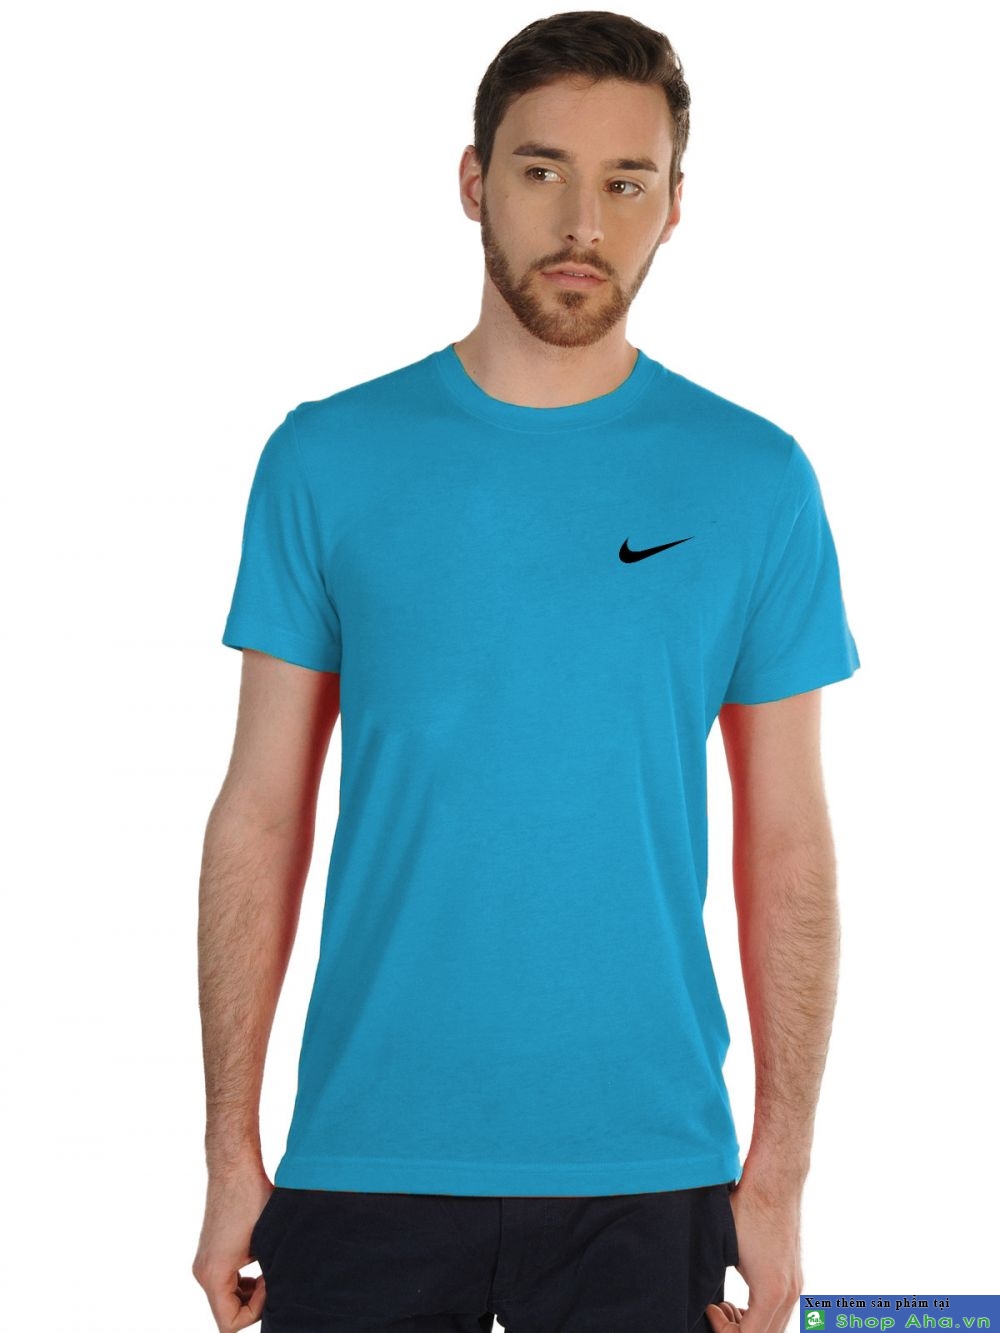 Áo thun Nike cổ tròn xanh biển móc đen DAA006